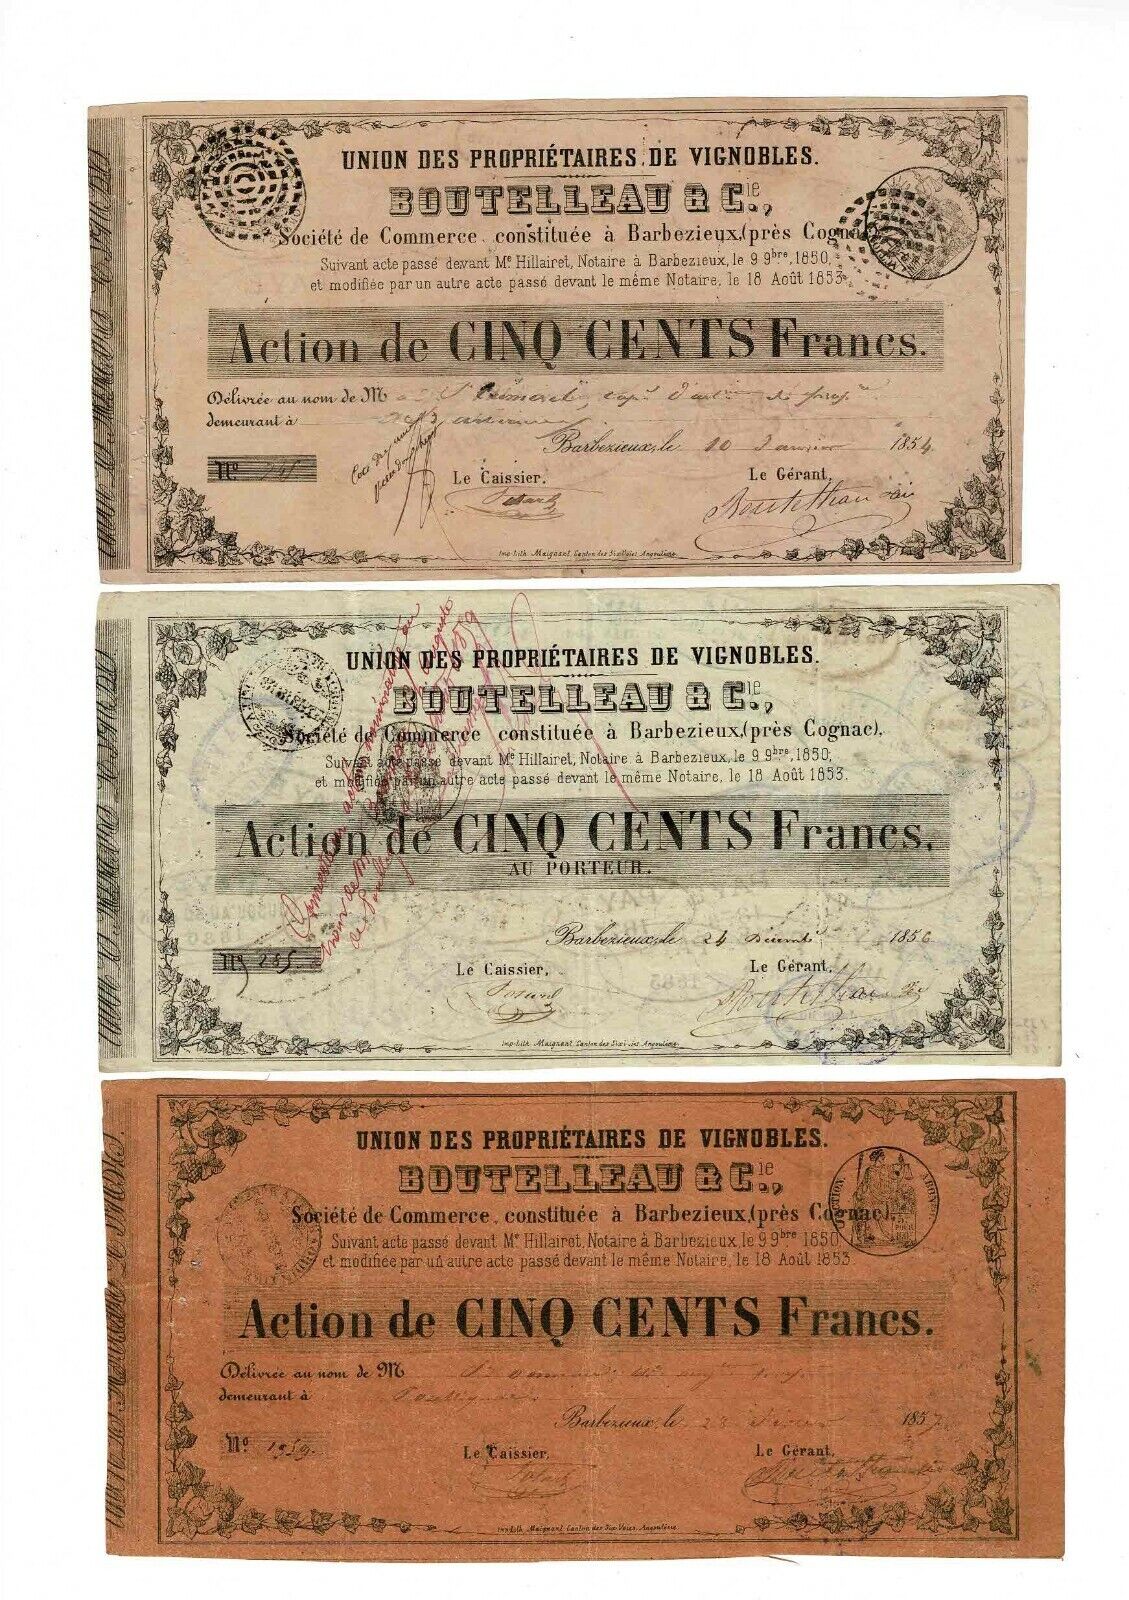 BOTTLE & Cie à Barbezieux - shares of 500 francs (1854-1857)